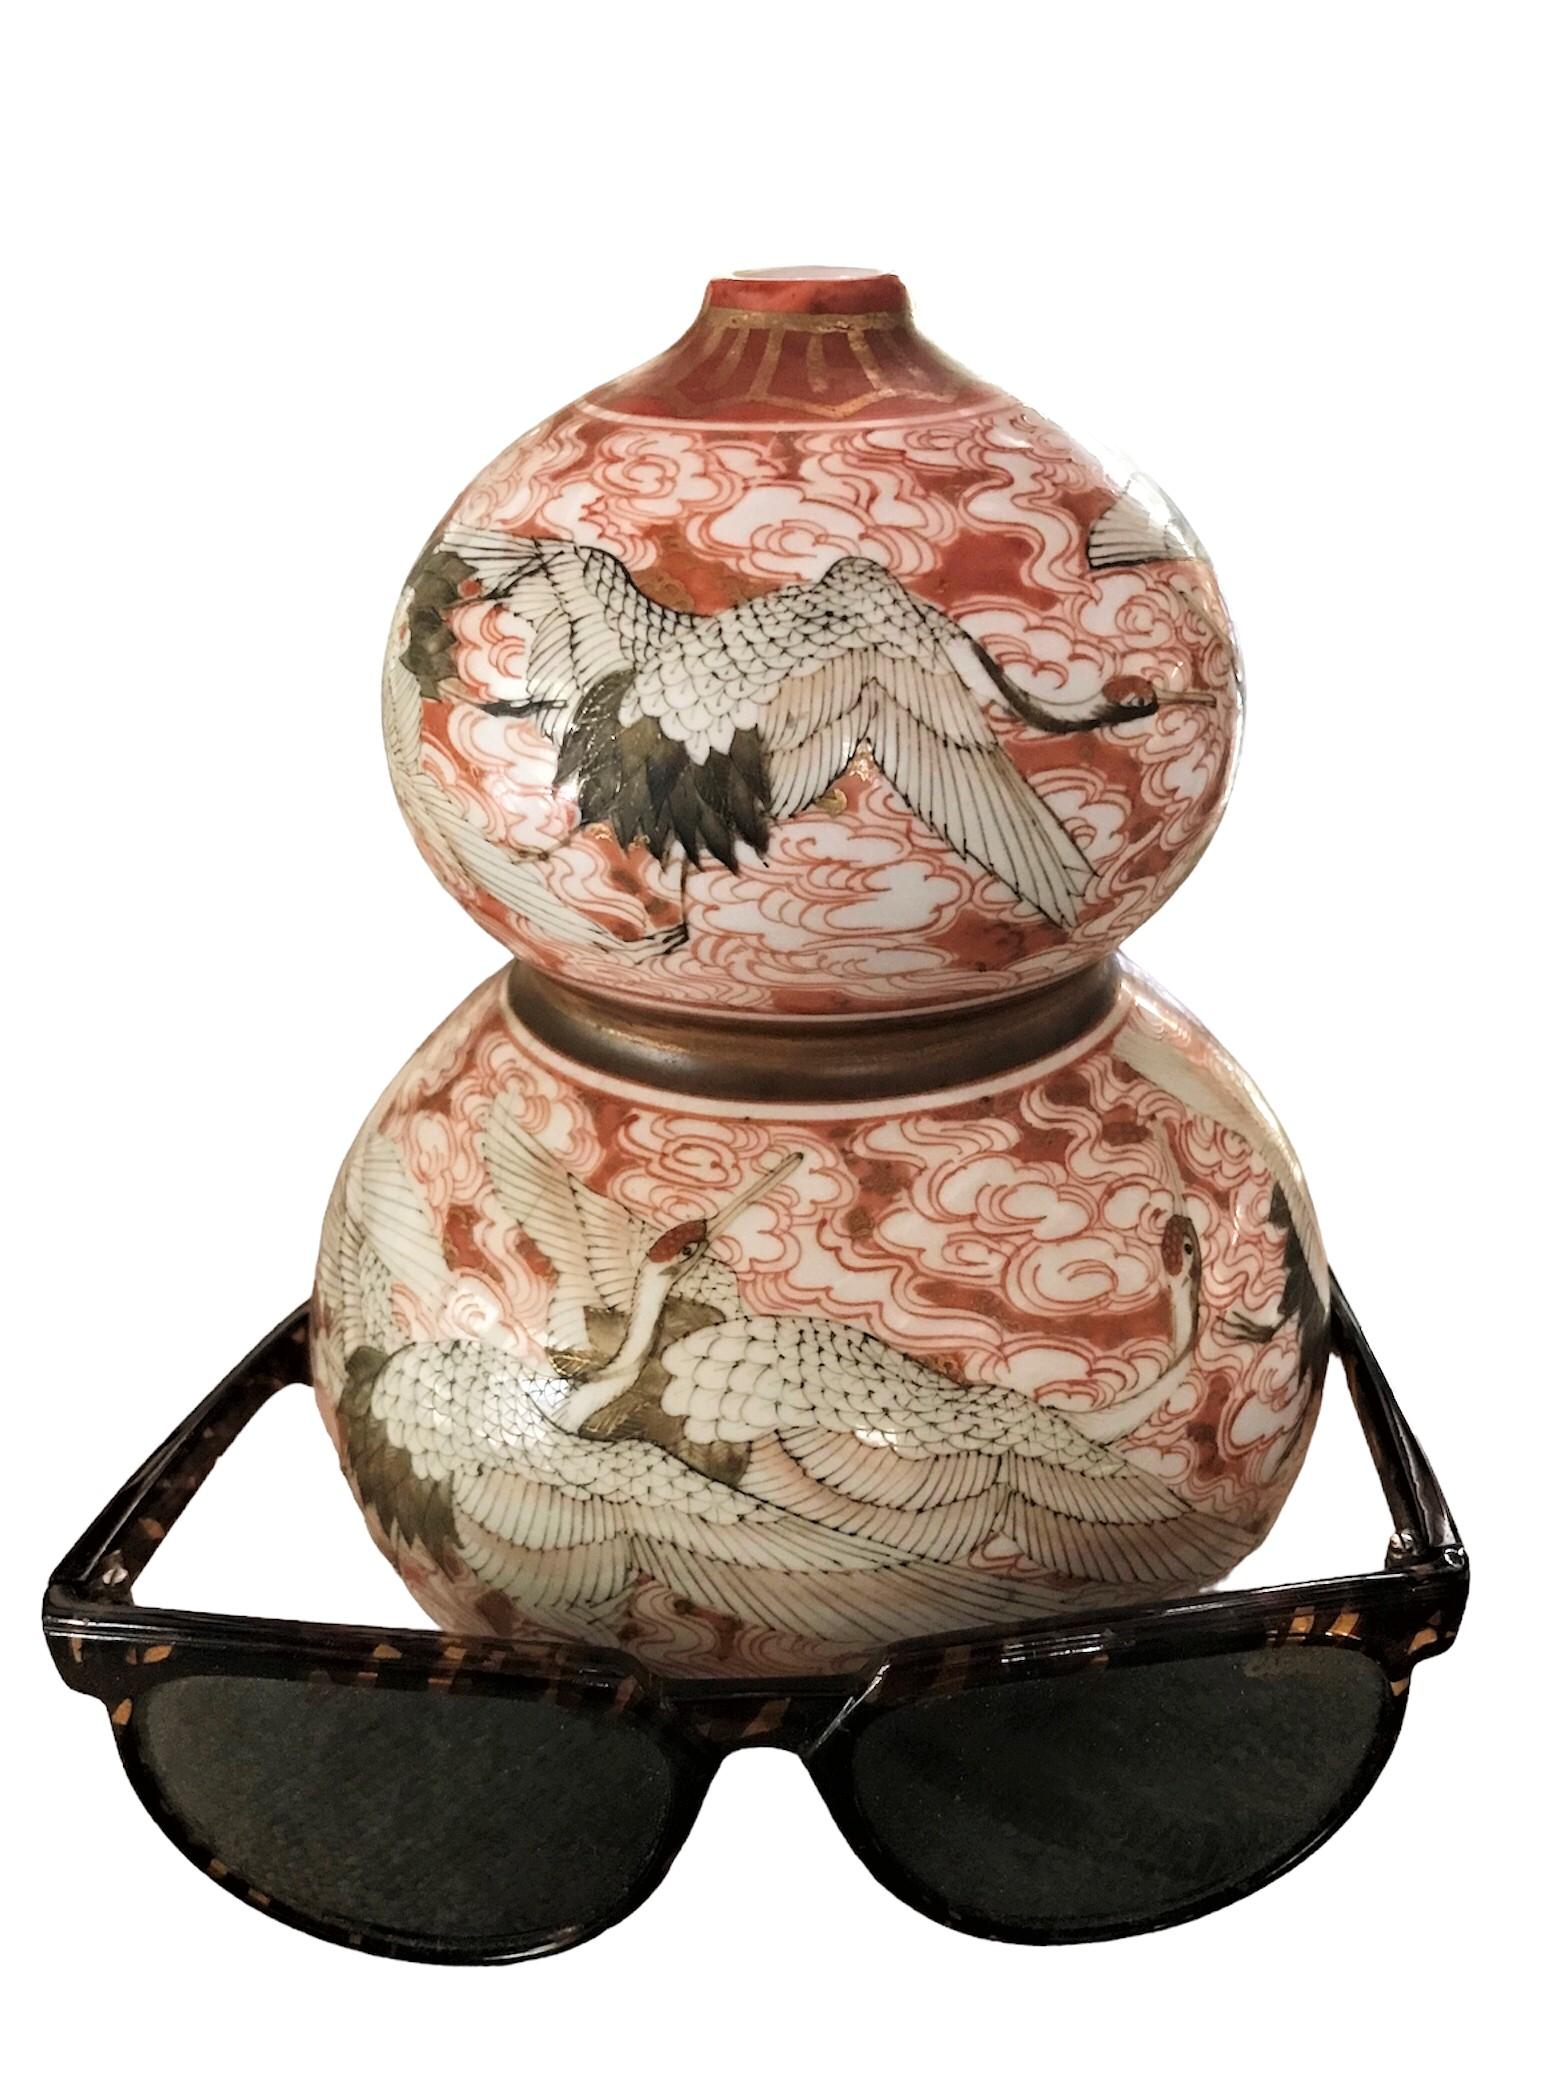 Vase exotique en céramique Kutani en forme de gourde avec un décor de grues volantes, datant du Japon du milieu du siècle dernier.  La peinture à la main a été réalisée avec beaucoup de soin et de connaissances artistiques.  Le vase est peint avec